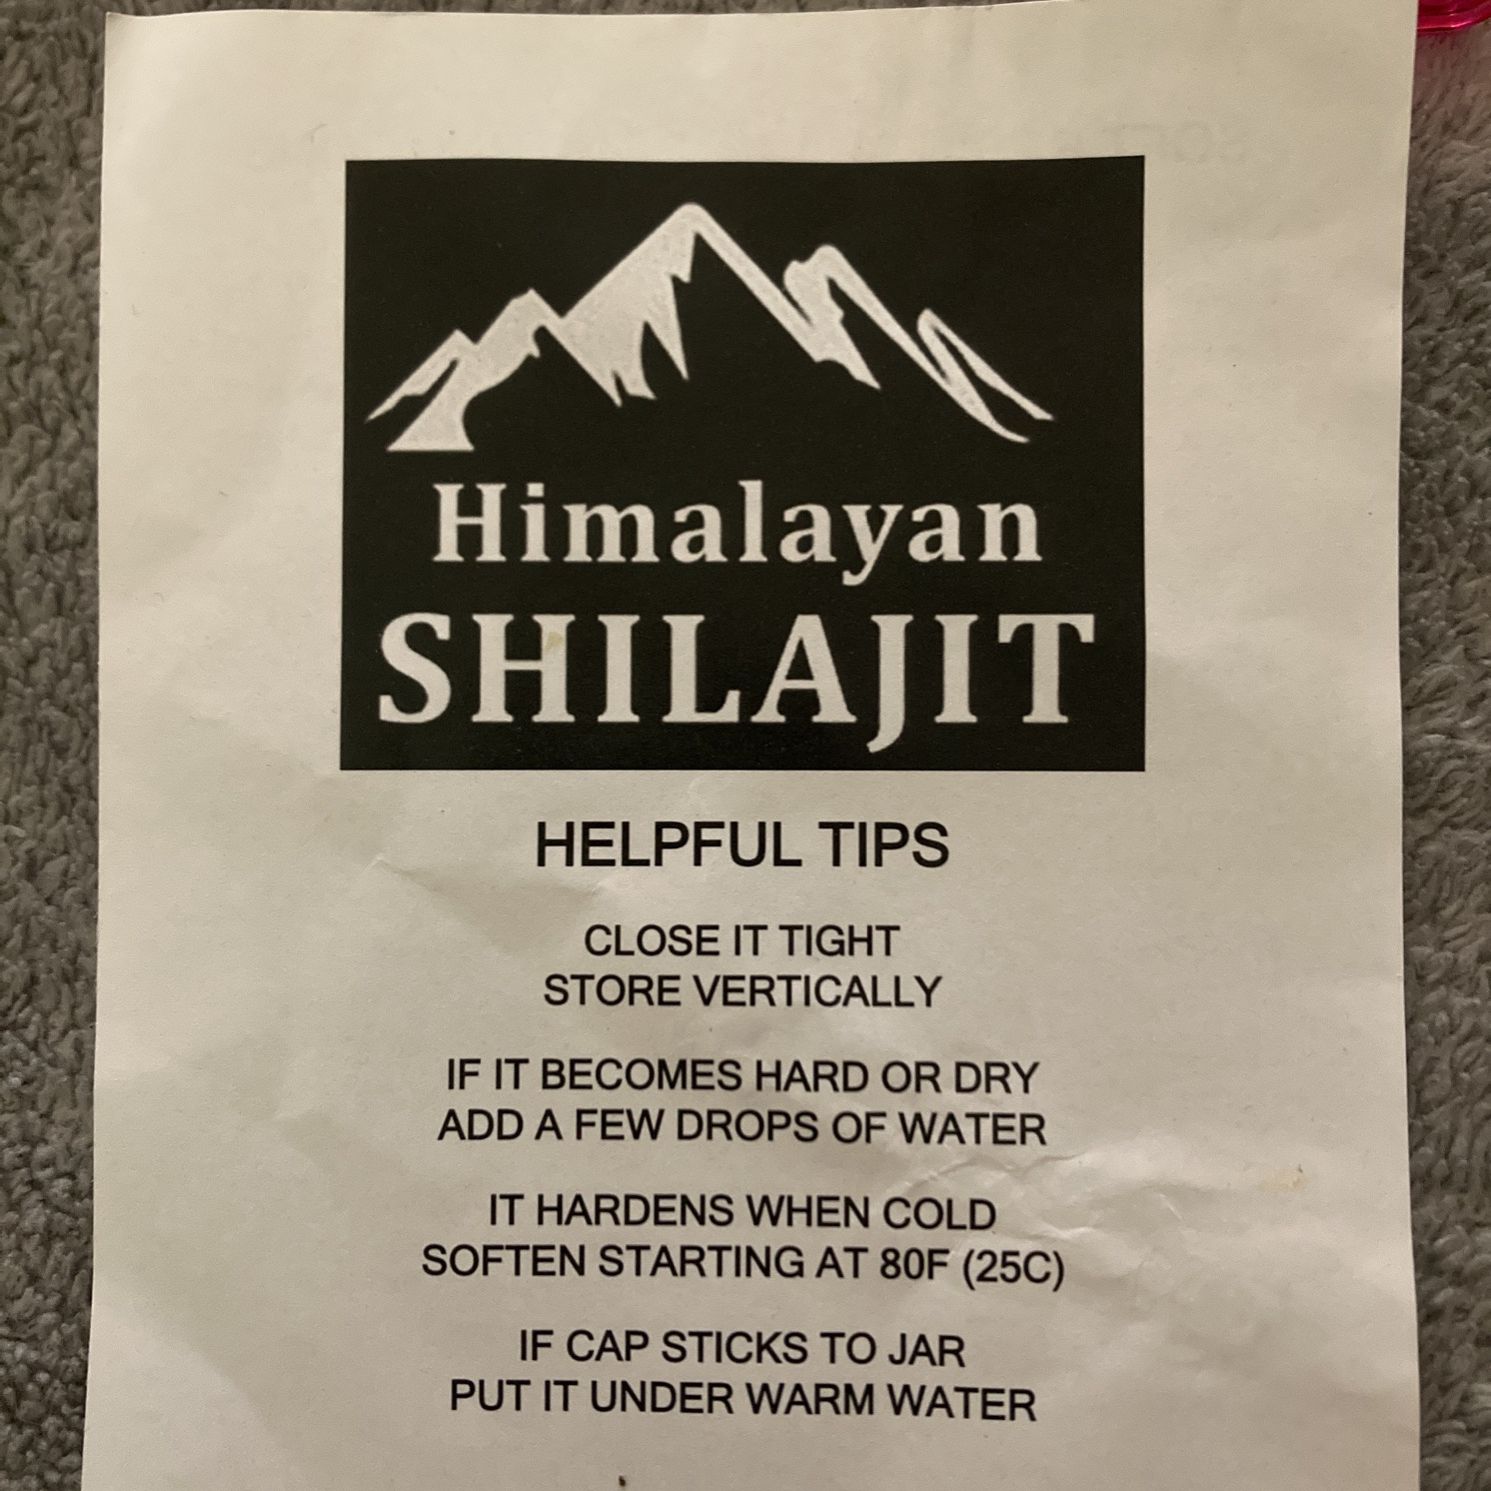 Himalayan Shilajit